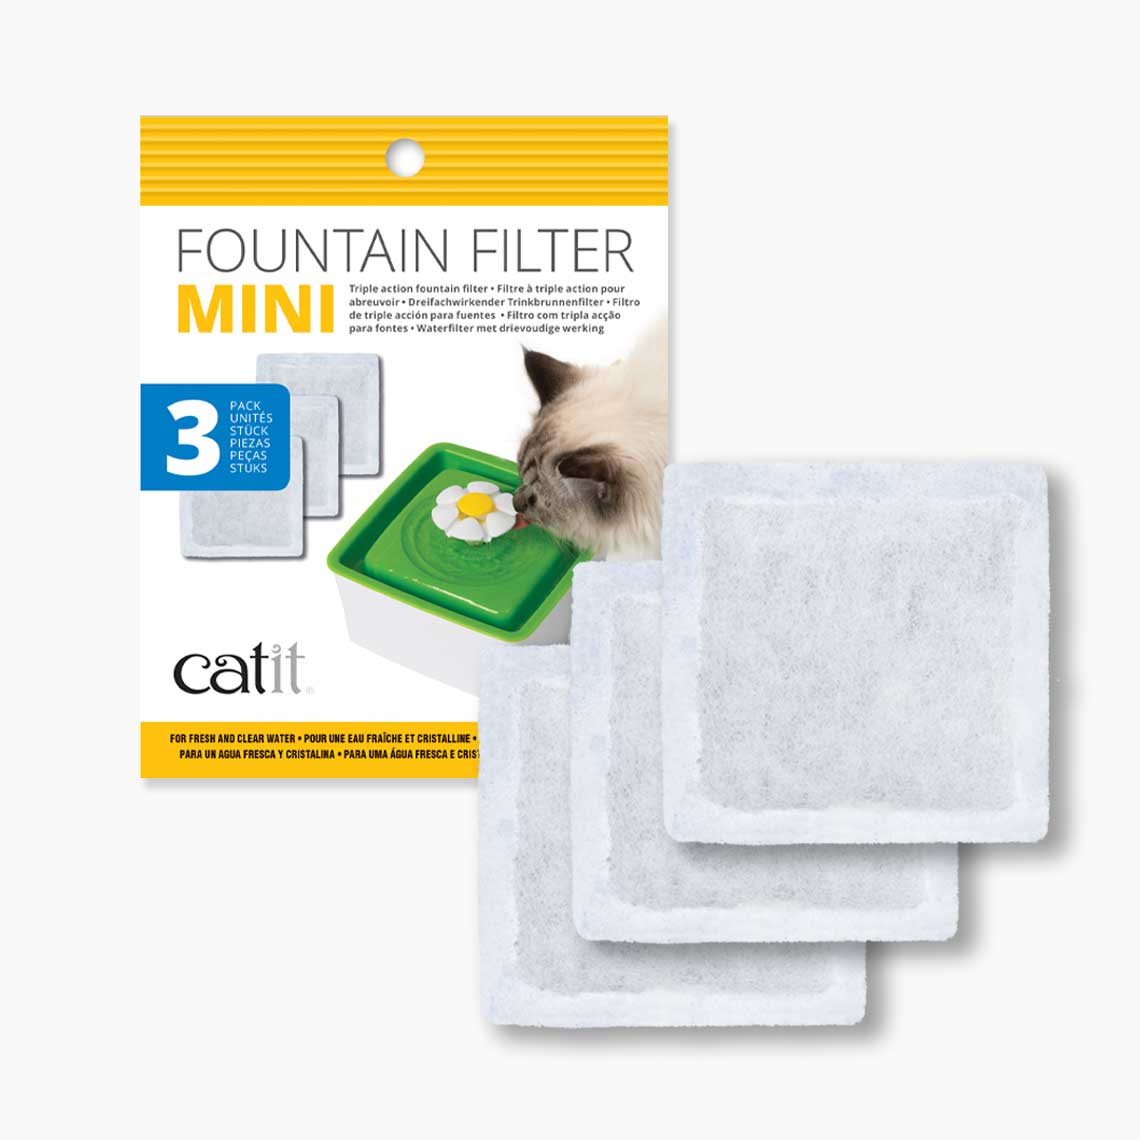 Verpakking van de Catit Mini Flower Fountain Filter